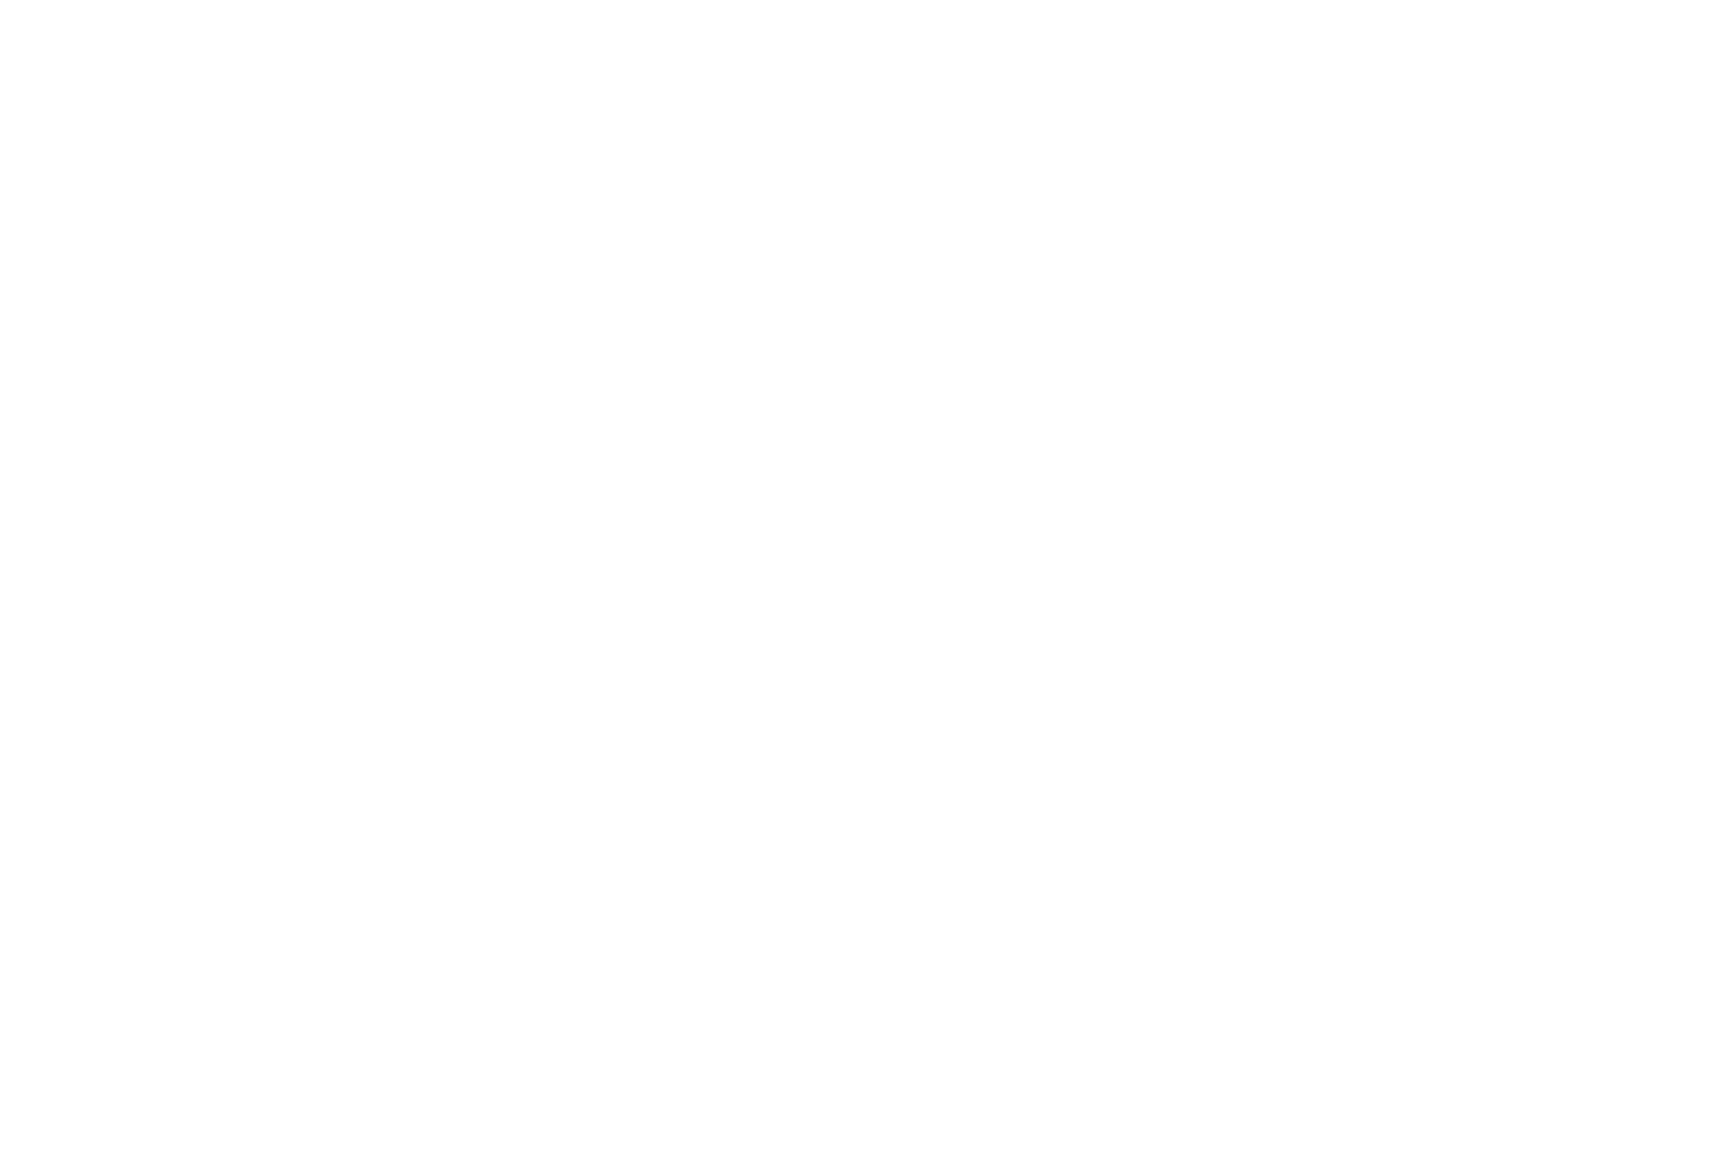 MERIT AWARD  - INTERNATIONAL NEW YORK FILM FESTIVAL  - 2016.png